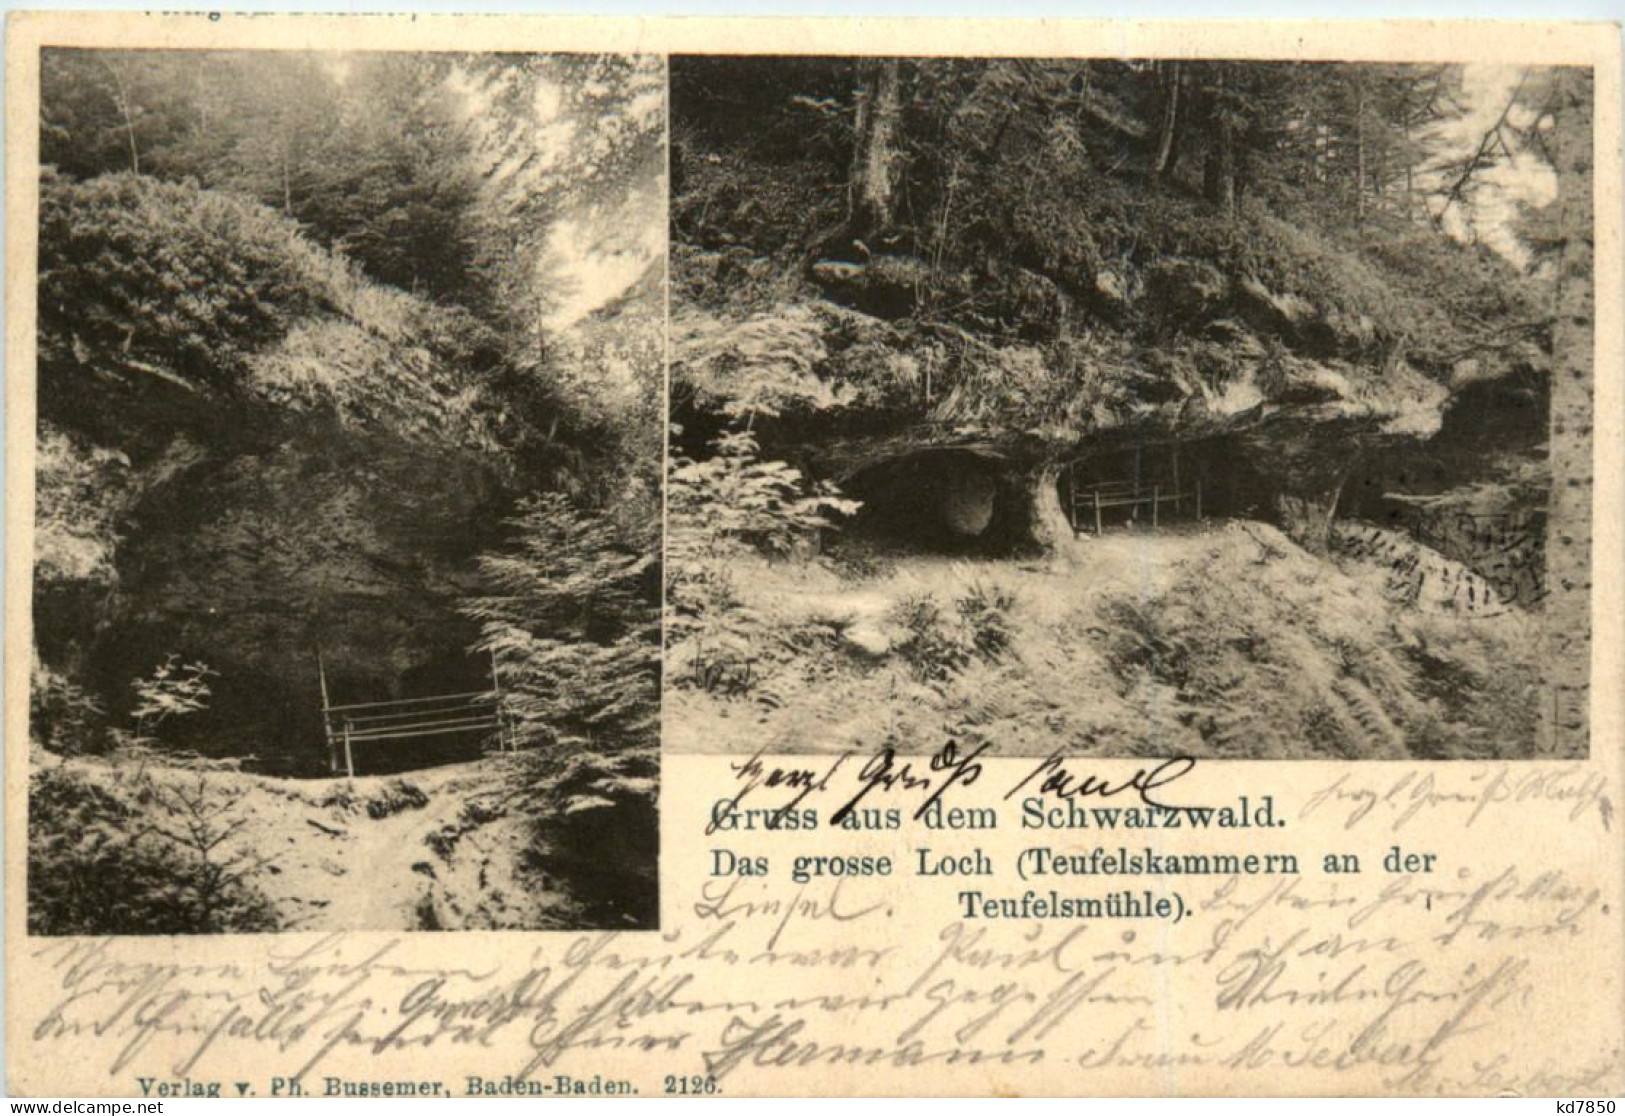 Gruss Aus Dem Schwarzwald, Das Grosse Loch - Villingen - Schwenningen